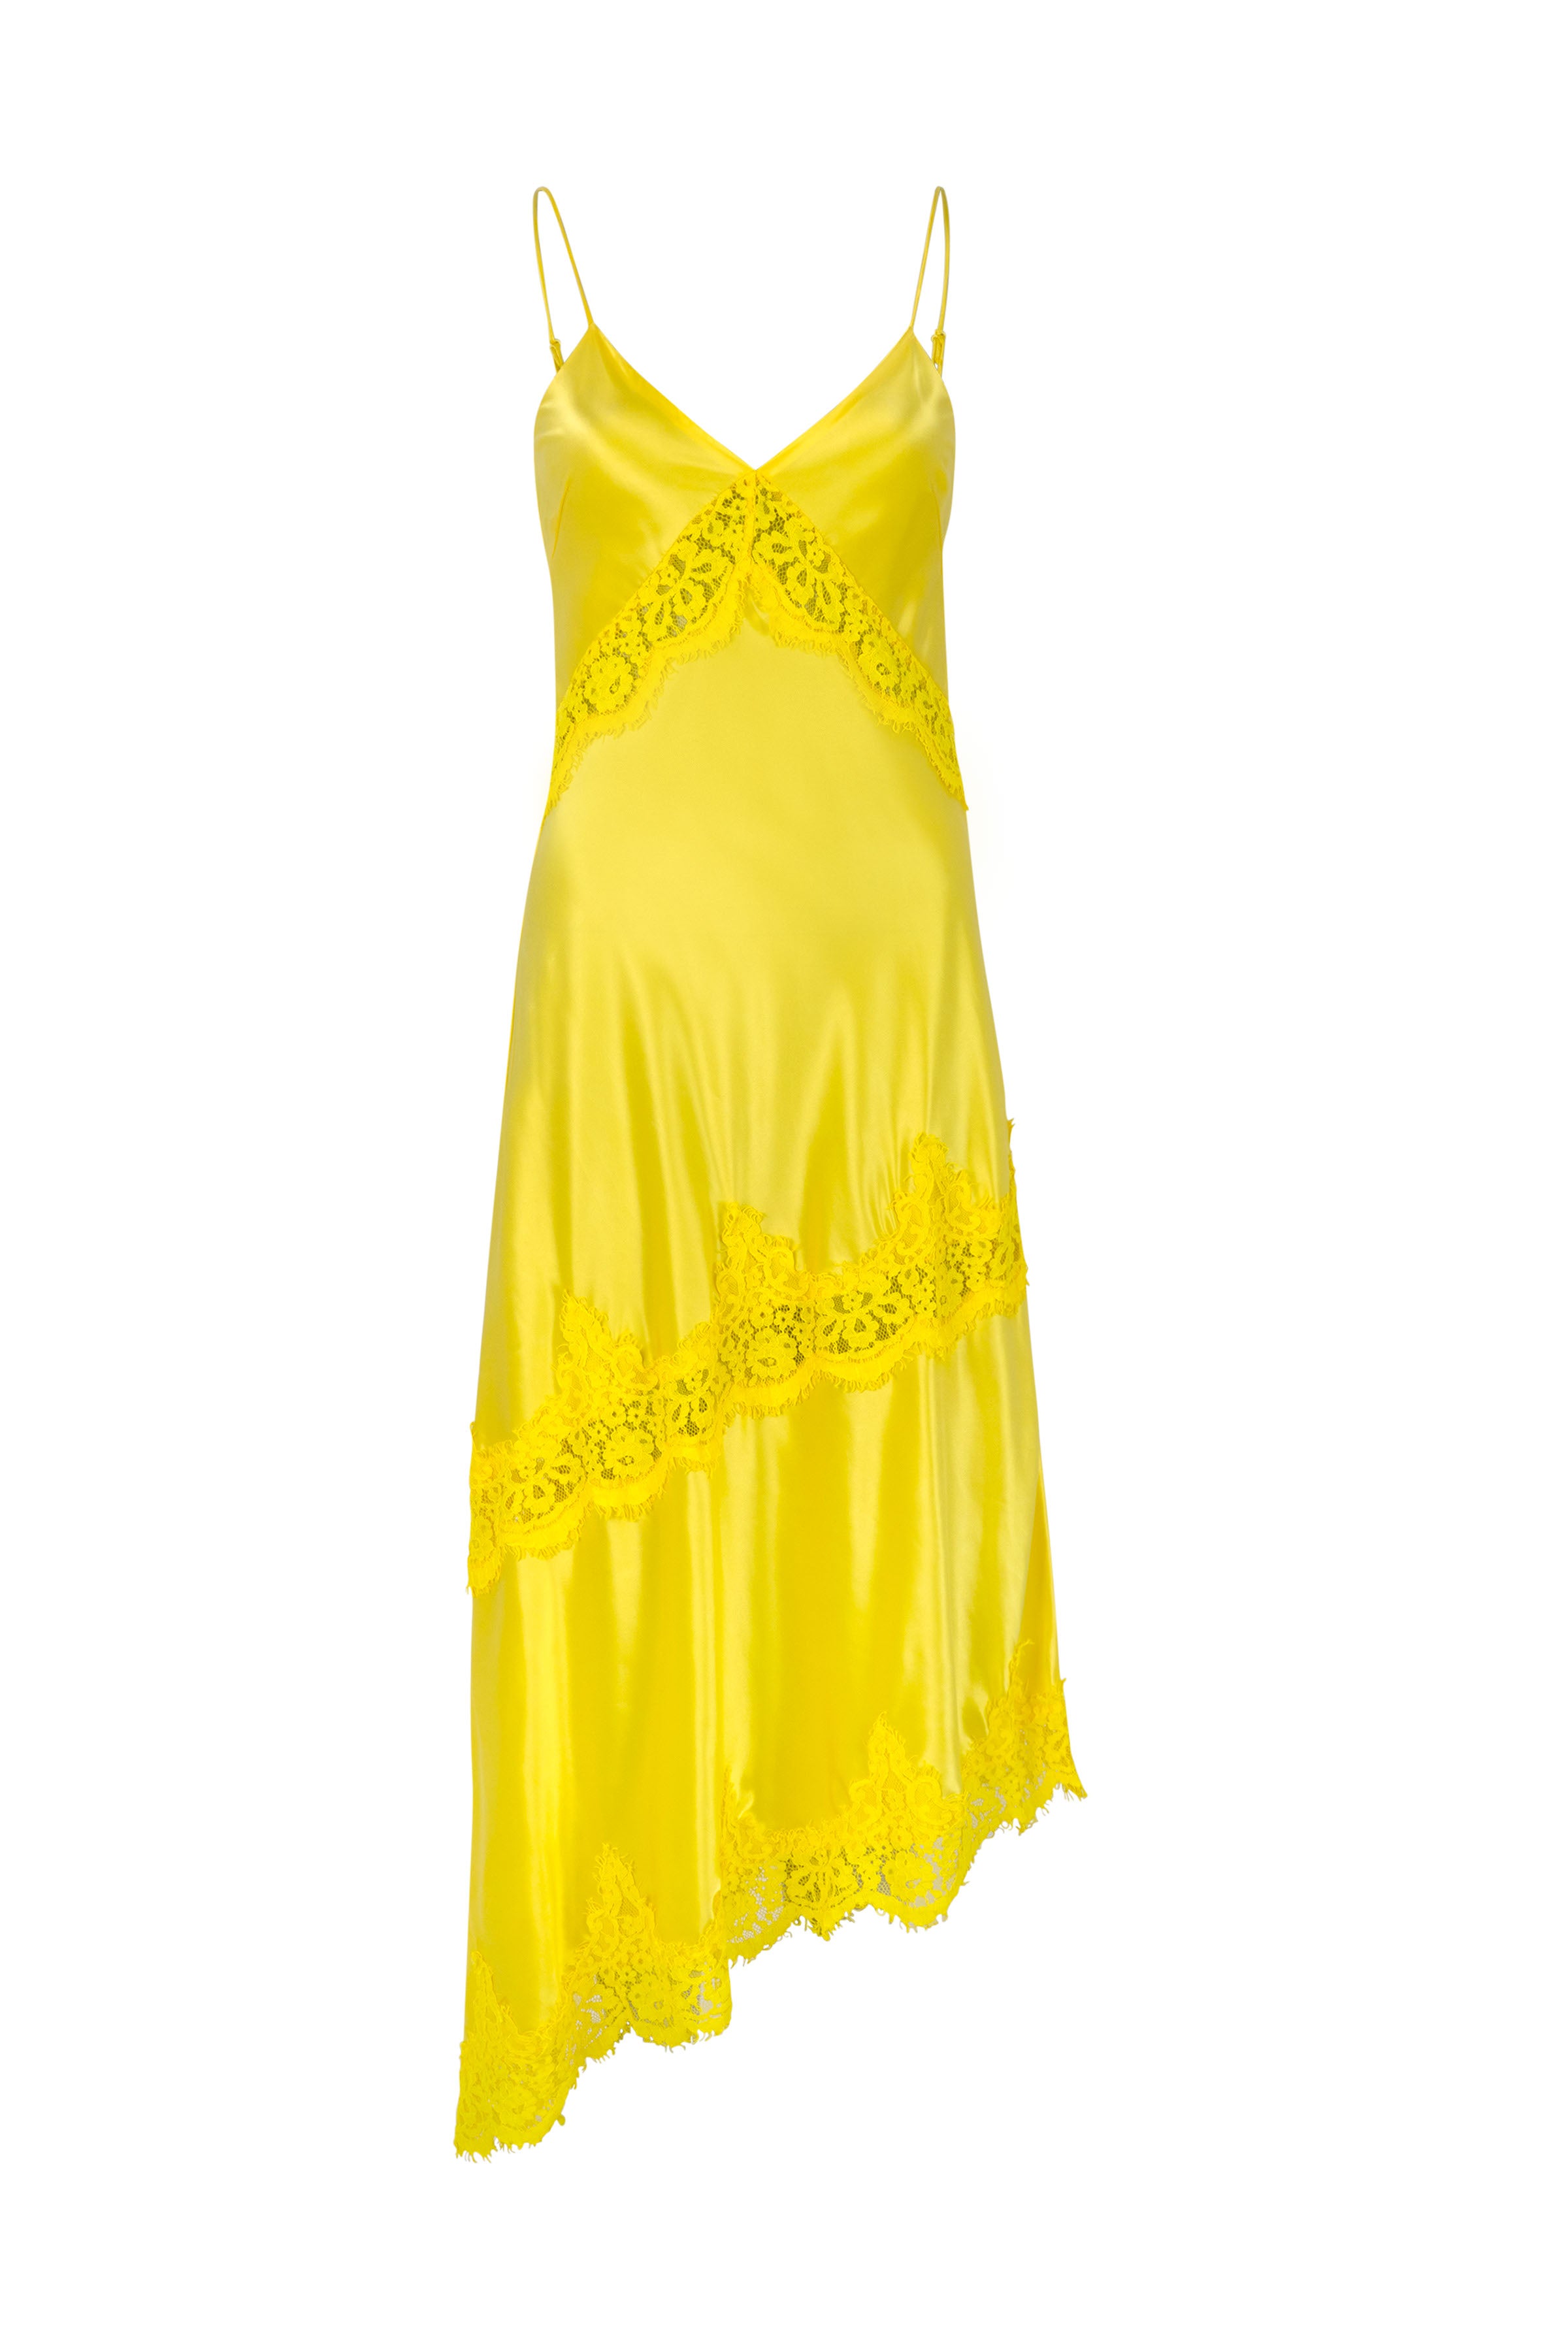 CRAS Julie Dress Dress 3001 Lemon Verbana